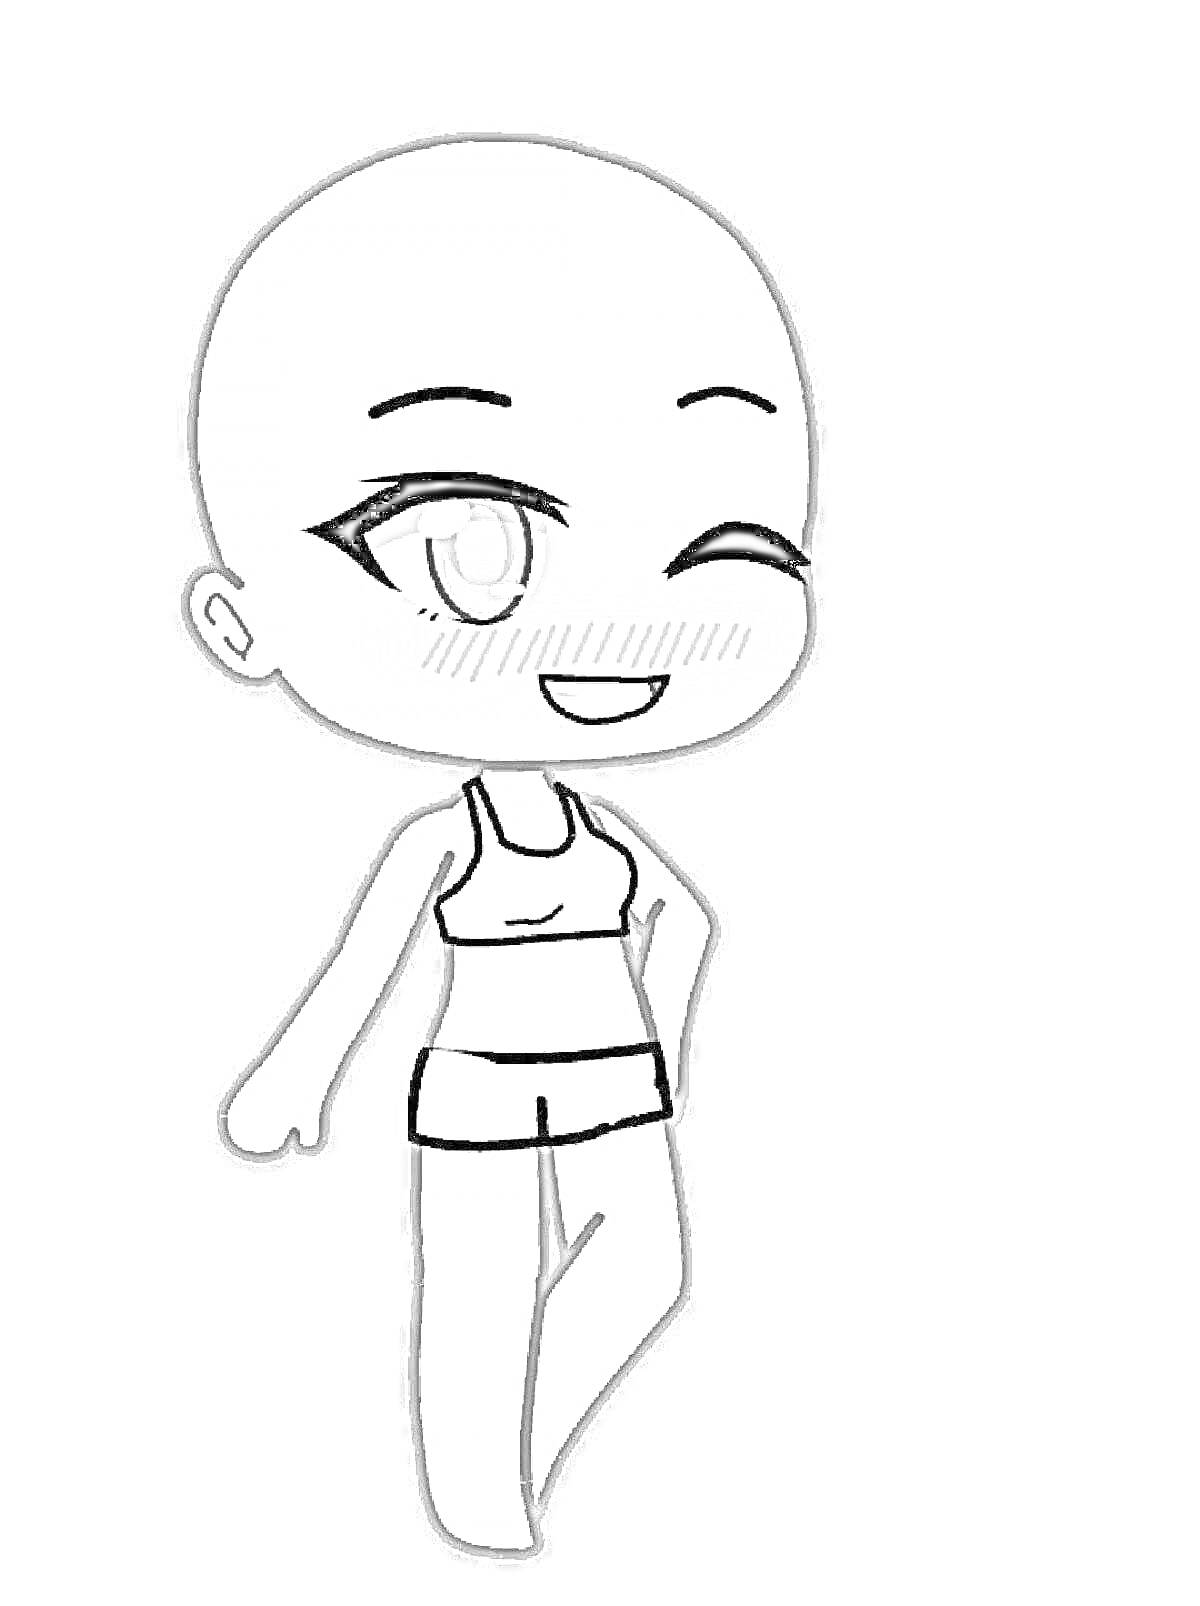 Раскраска Манекен из игры Тока Бока: улыбающийся персонаж в топе и шортах